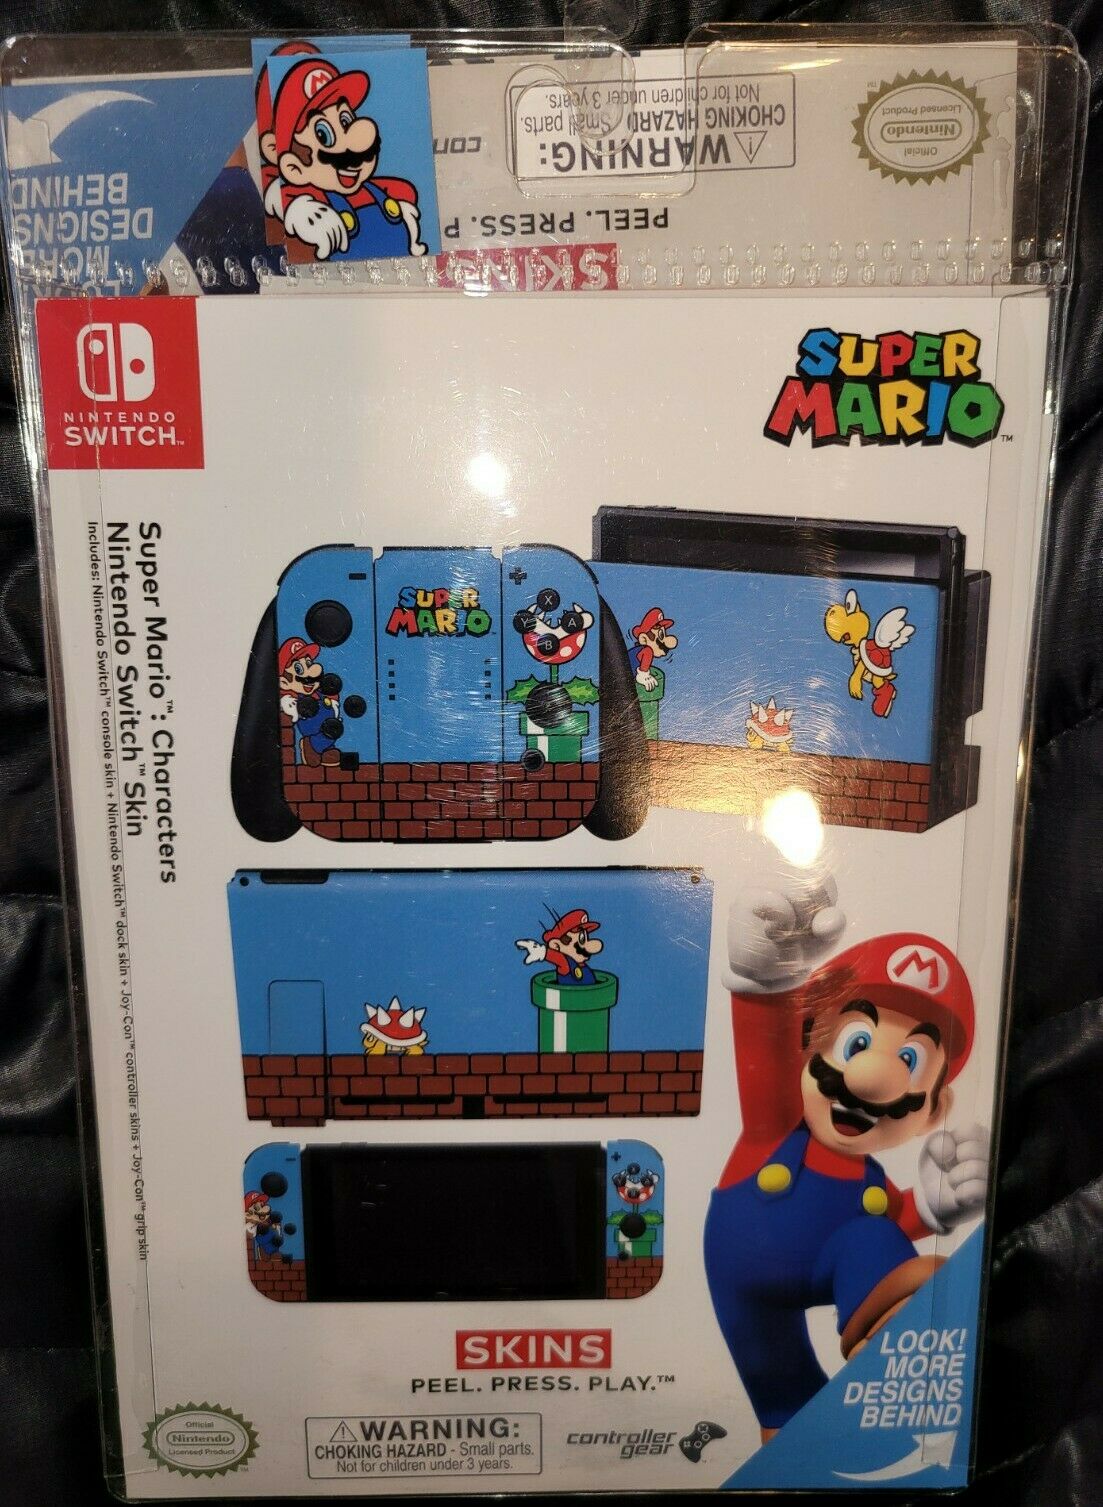 Controller Cover Gear Nintendo Switch Joy-Con Super Mario Skin